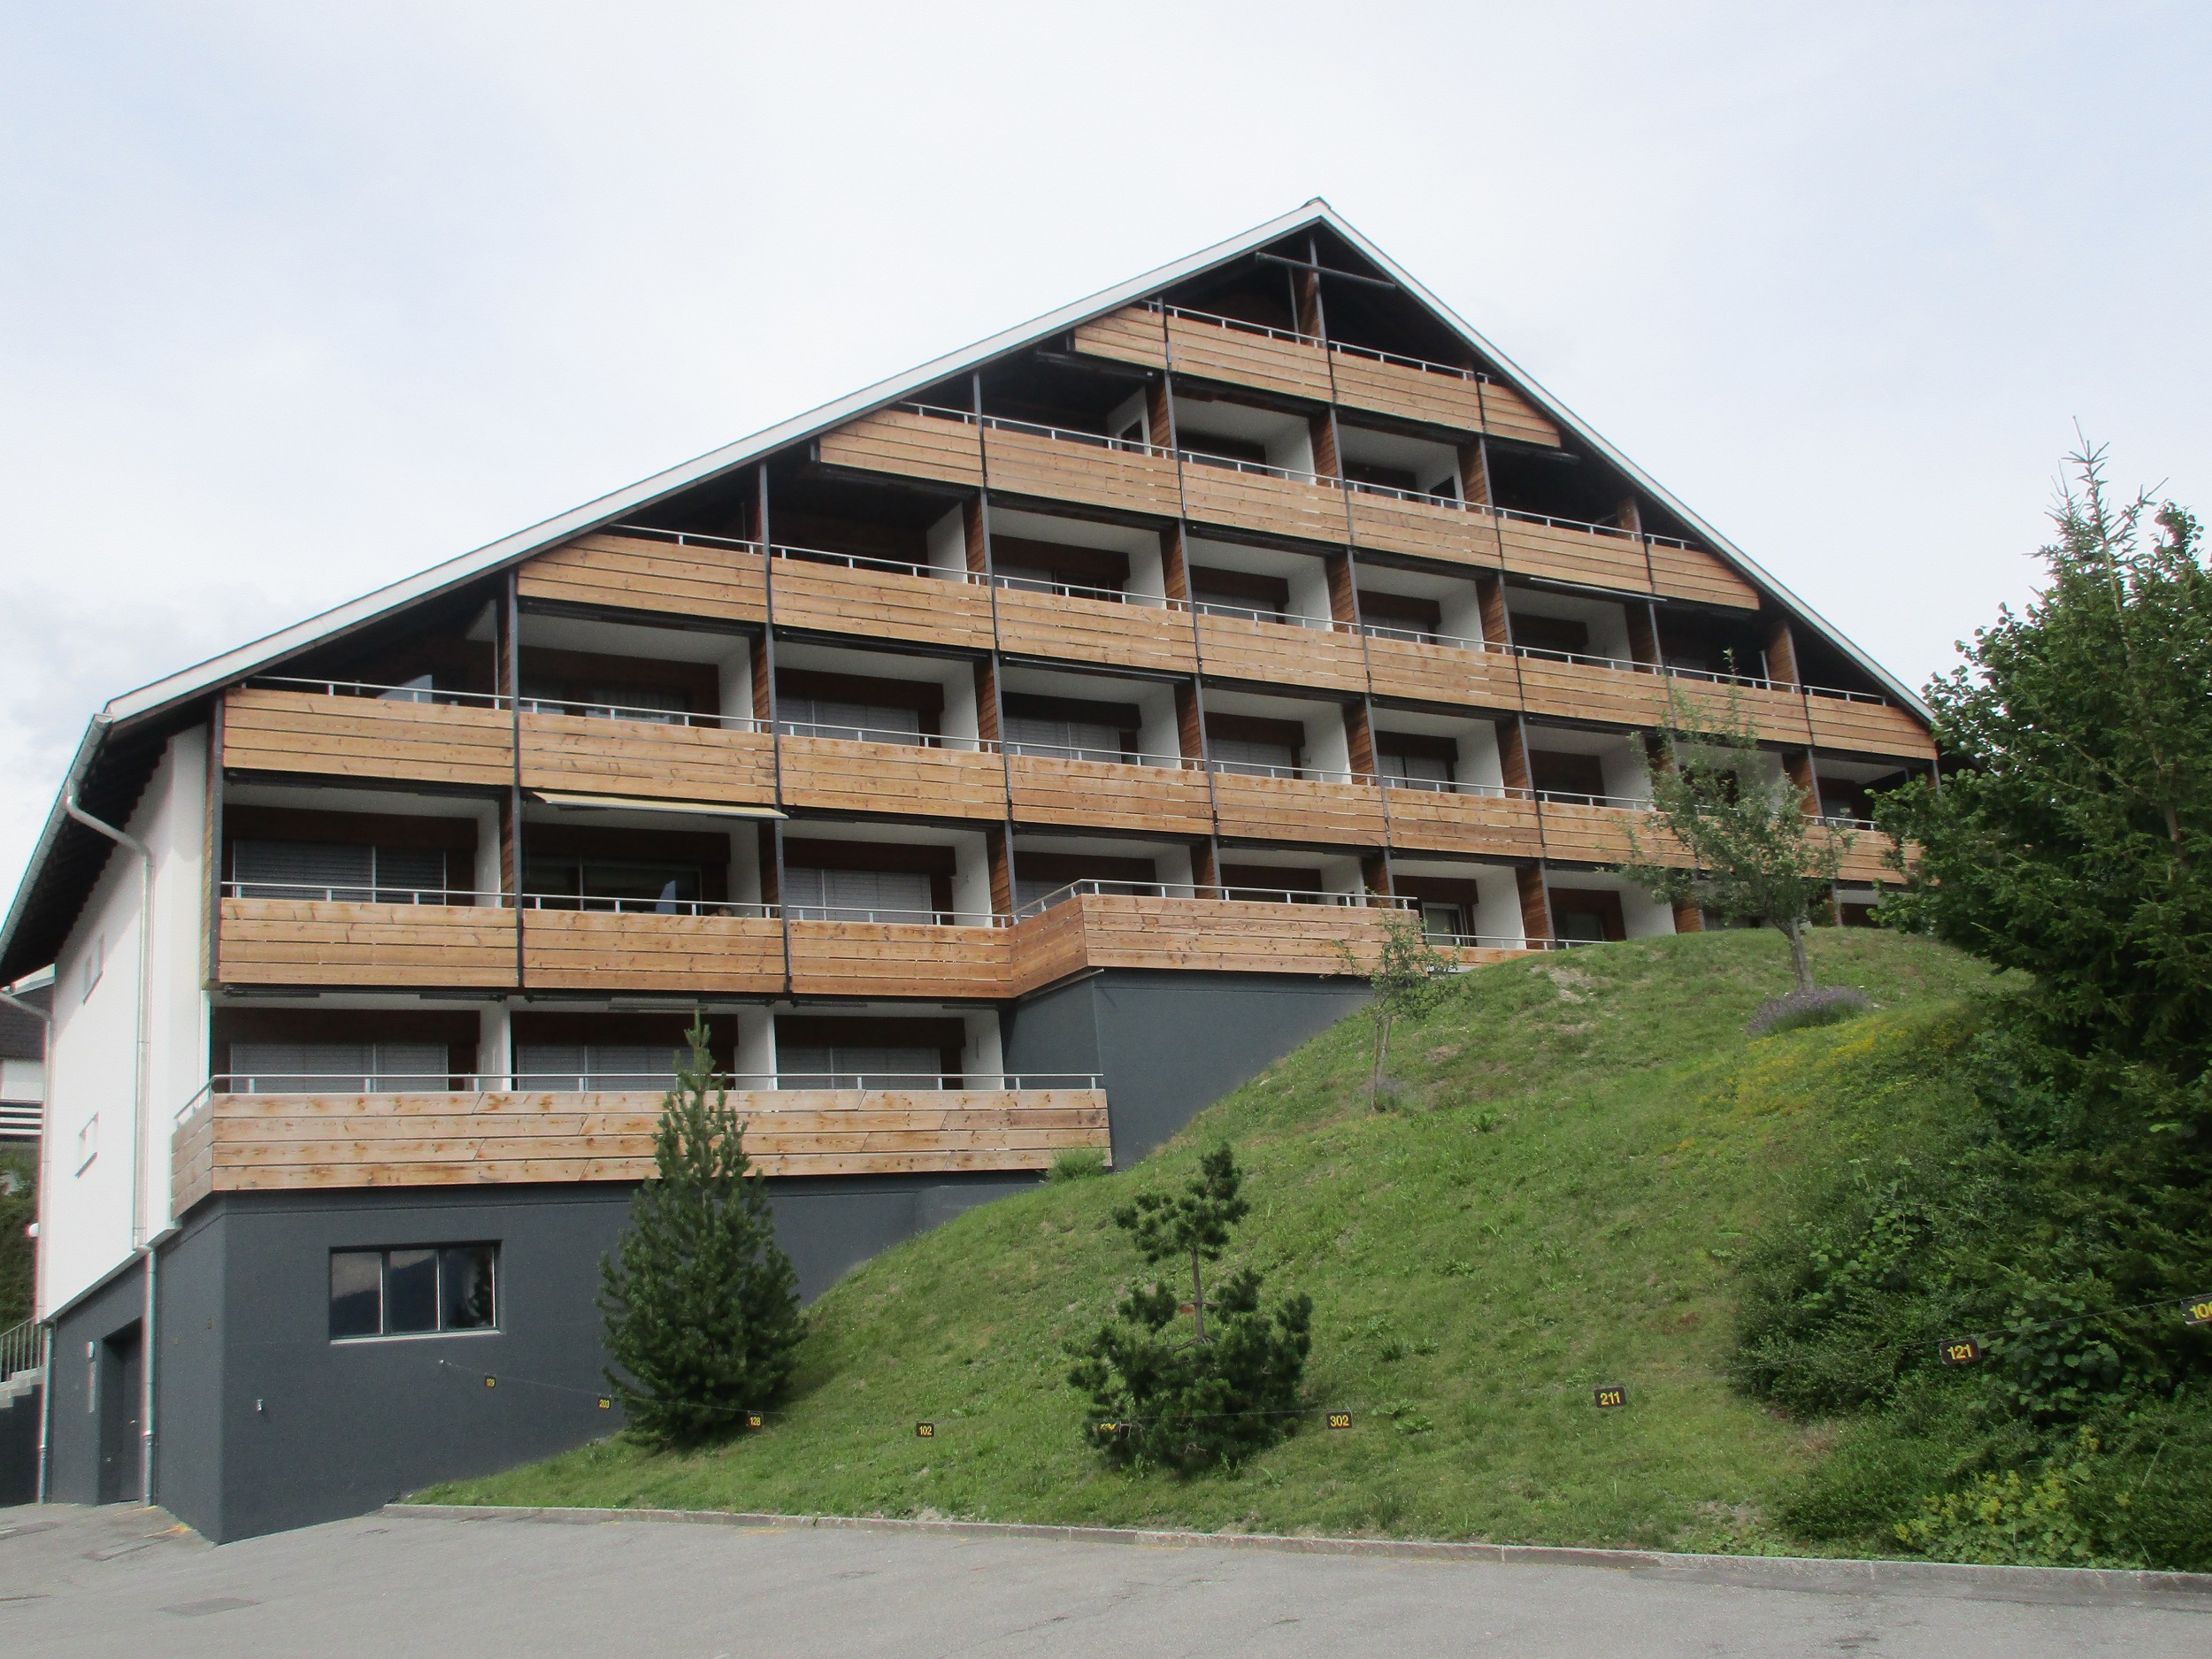 La Prada, (Laax Dorf). 2 Zimmerwohnung Ferienwohnung in der Schweiz